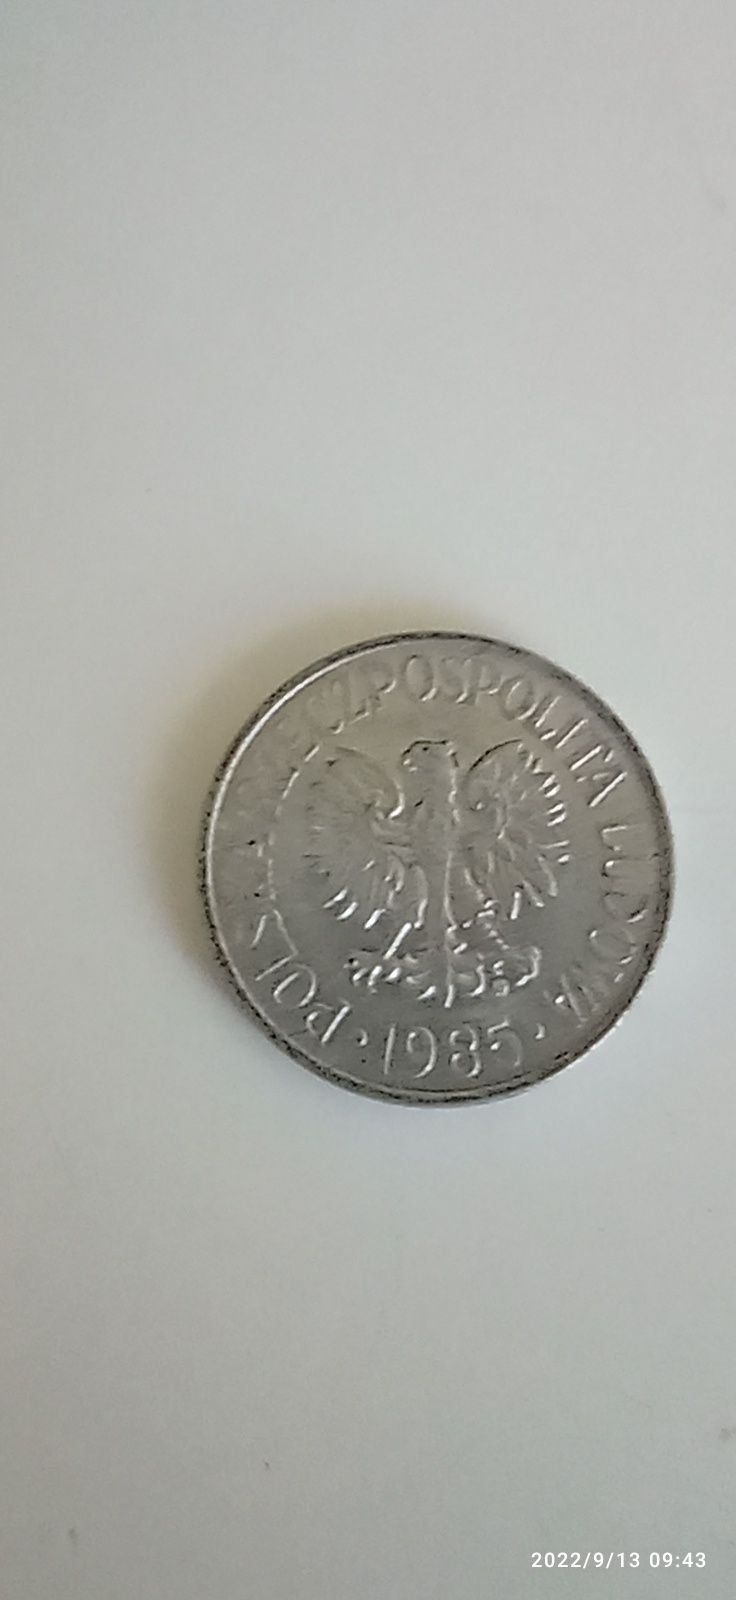 50 groszy polskie 1985 r